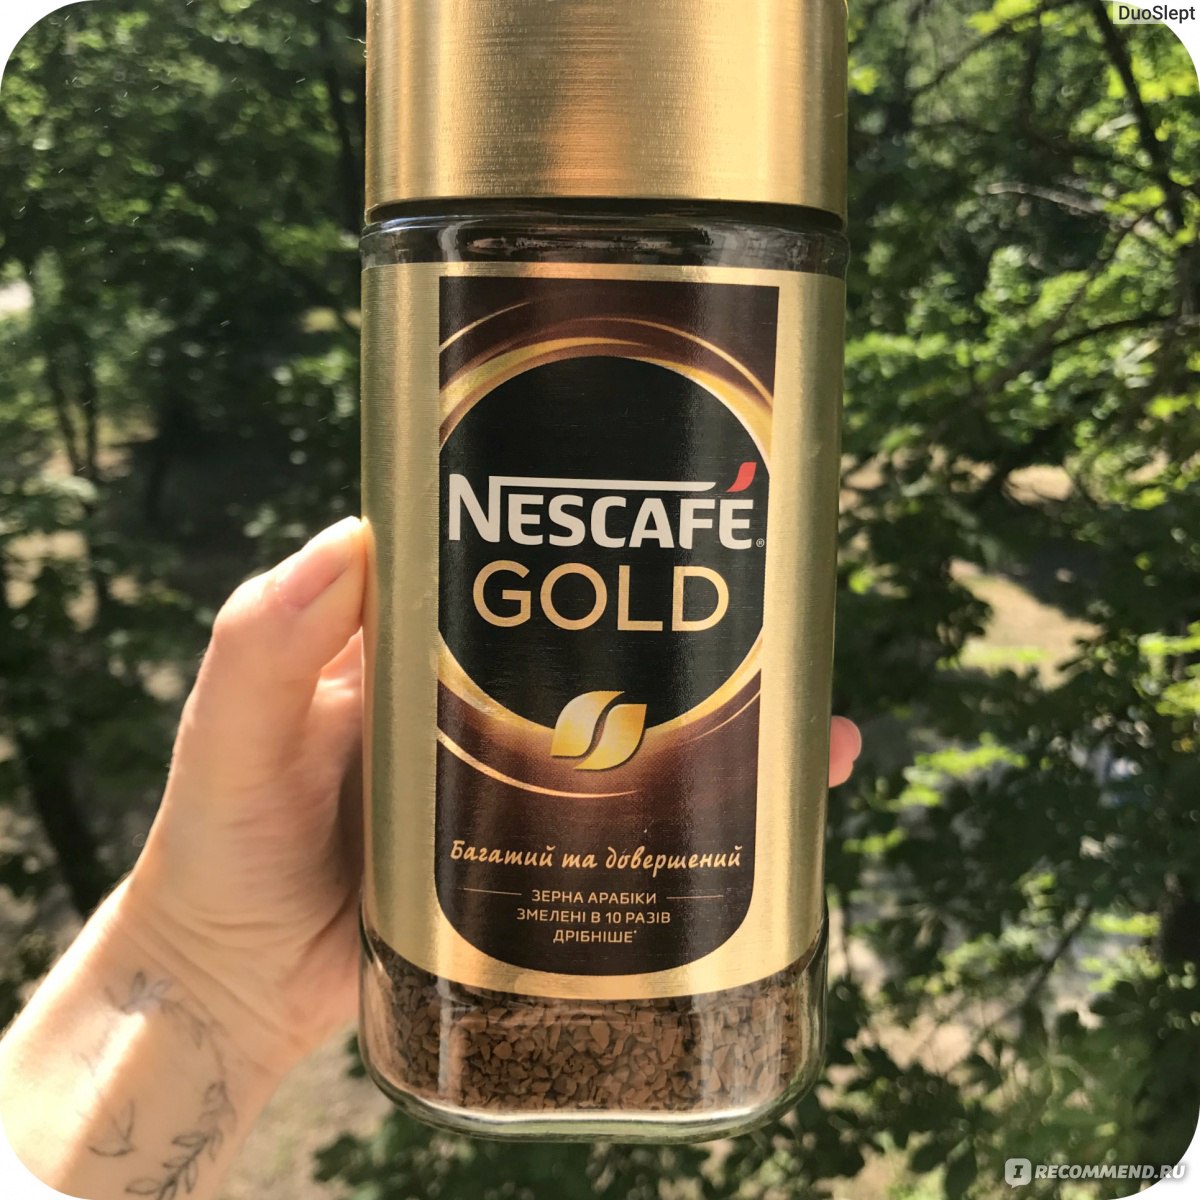 Нескафе голд отзывы. Нескафе Голд 7. Nescafe Gold 60u. Nescafe Gold dp 50g. Nescafe Gold dp 320g.